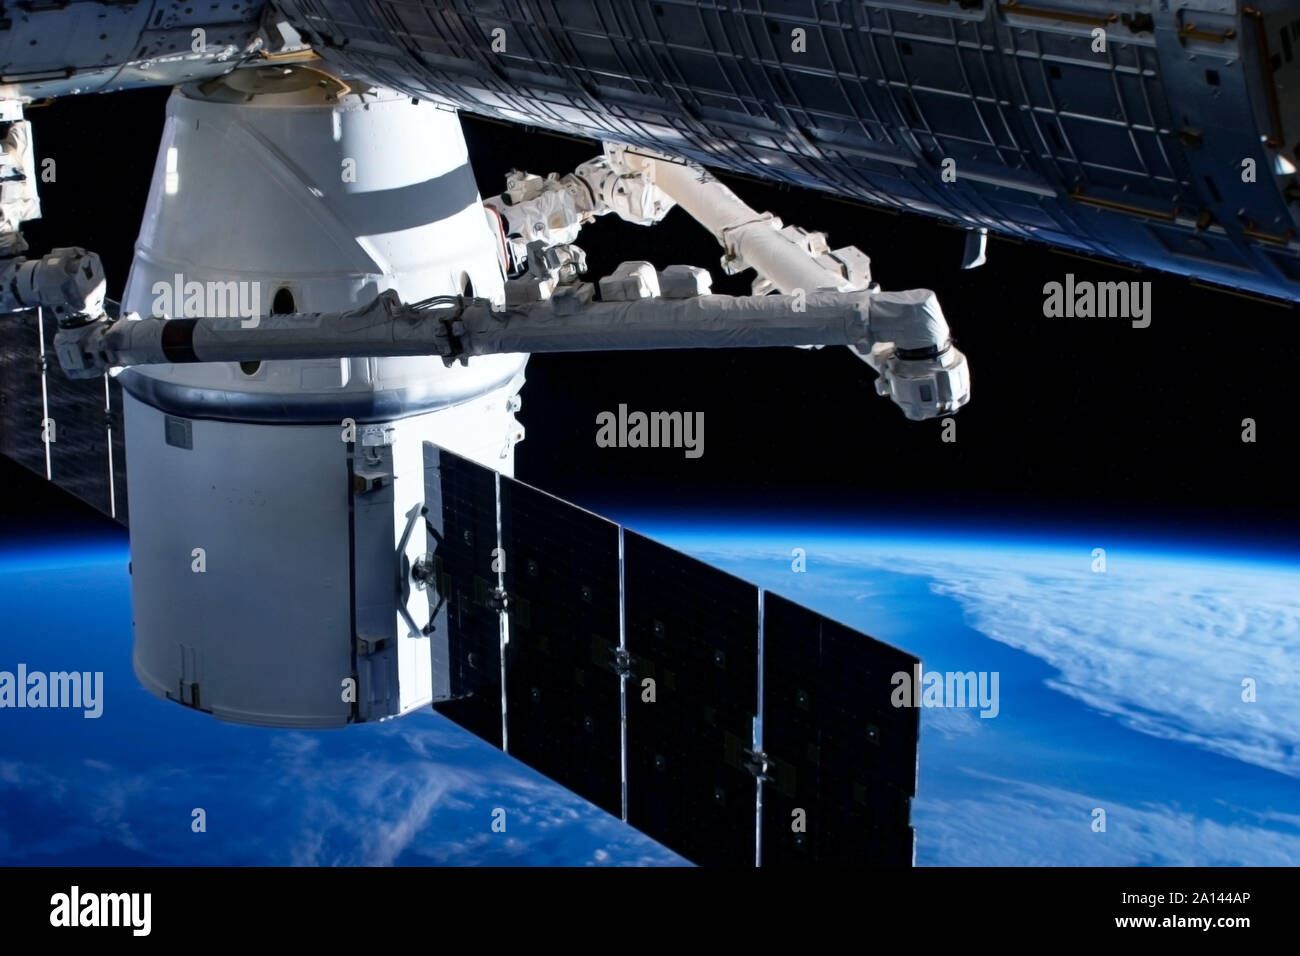 Separare il modulo spaziale, sul terreno.Gli elementi di questa immagine sono state arredate dalla NASA Foto Stock